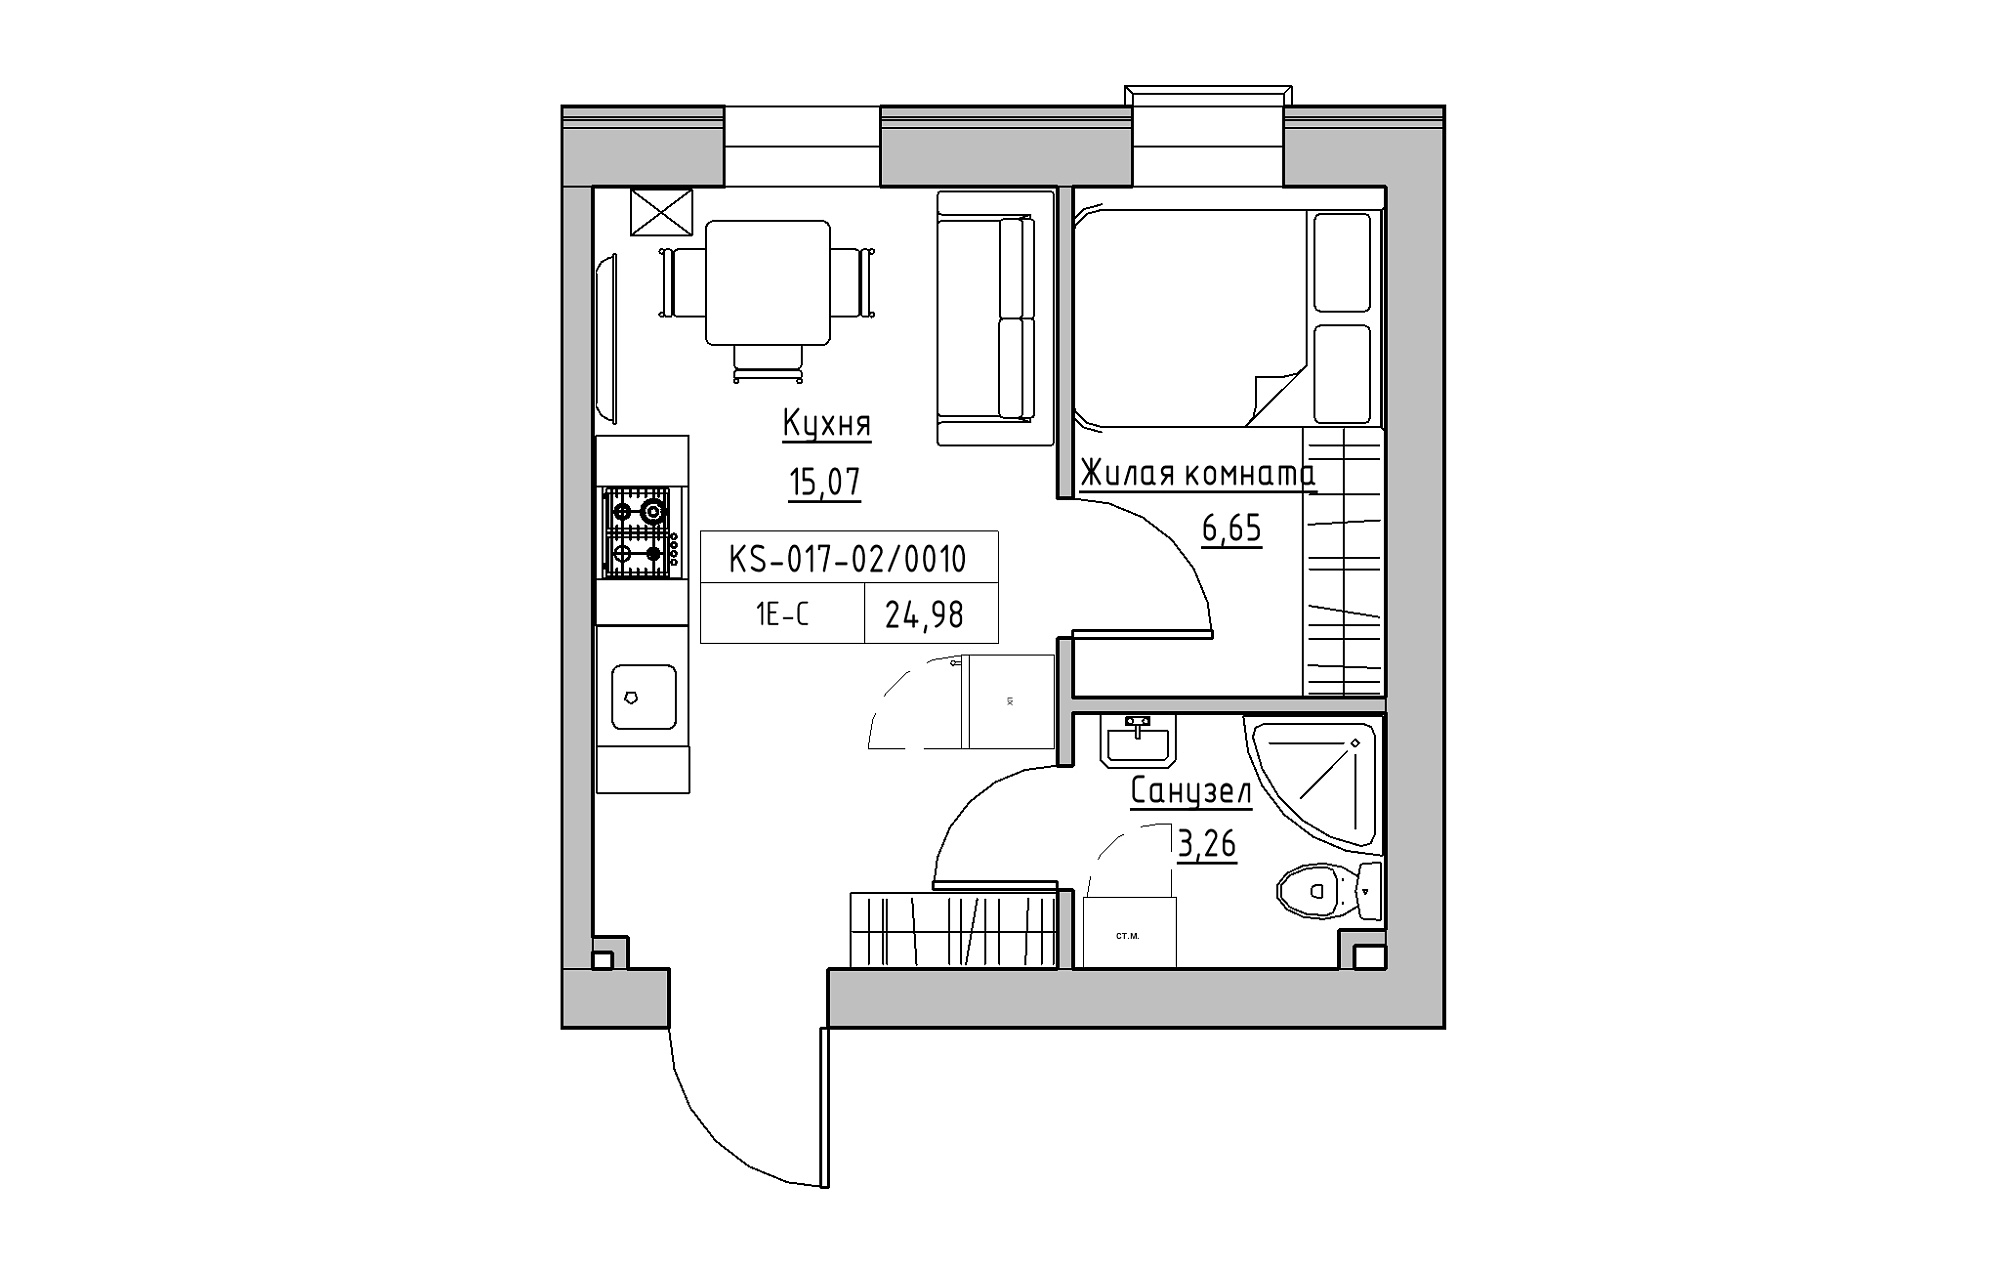 Планировка 1-к квартира площей 24.98м2, KS-017-02/0010.